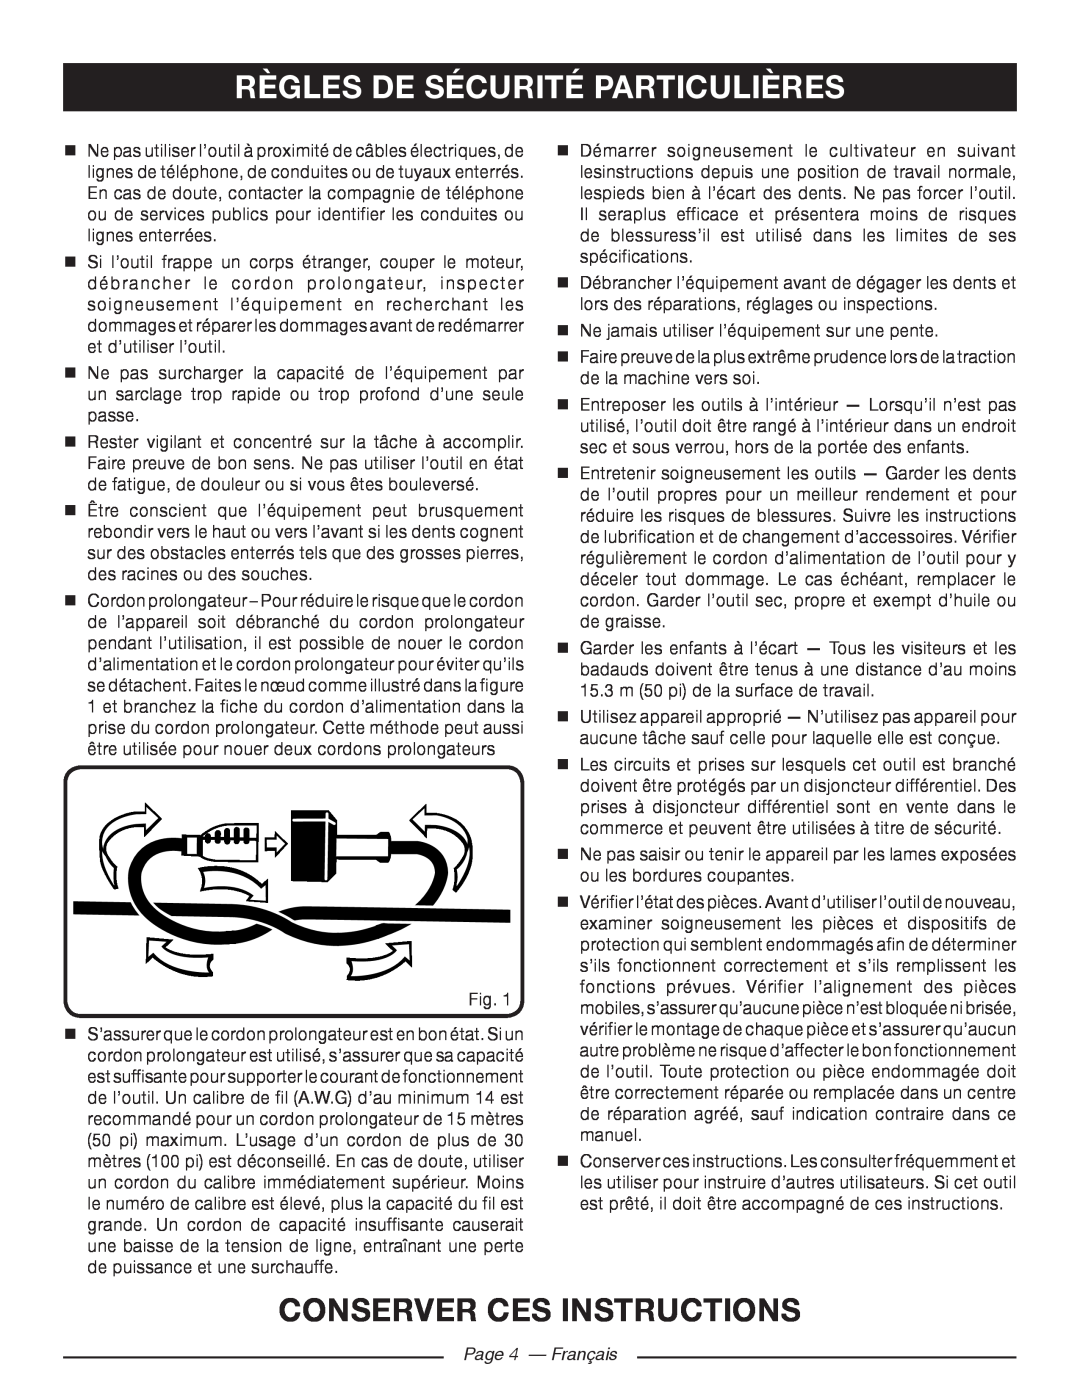 Homelite UT46510 manuel dutilisation règles de sécurité particulières, conserver ces instructions, Page 4 - Français 